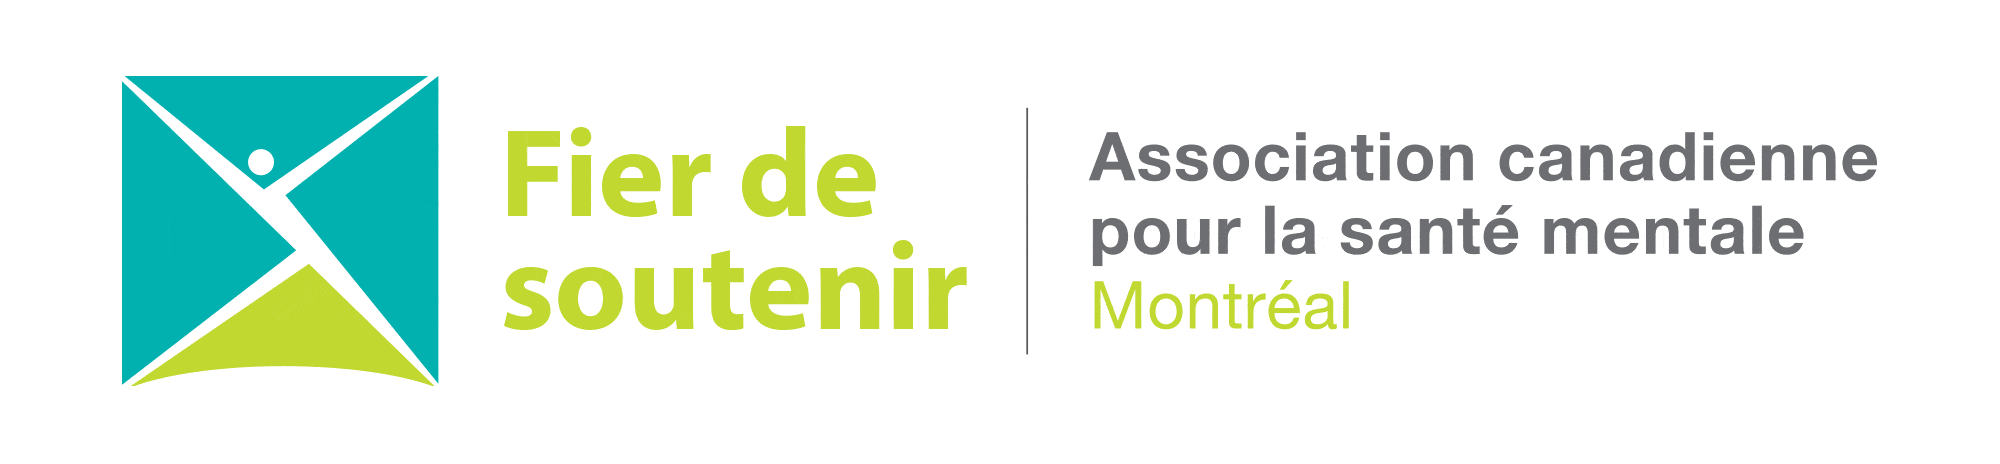 Fier de soutenir l'ACSM Montréal